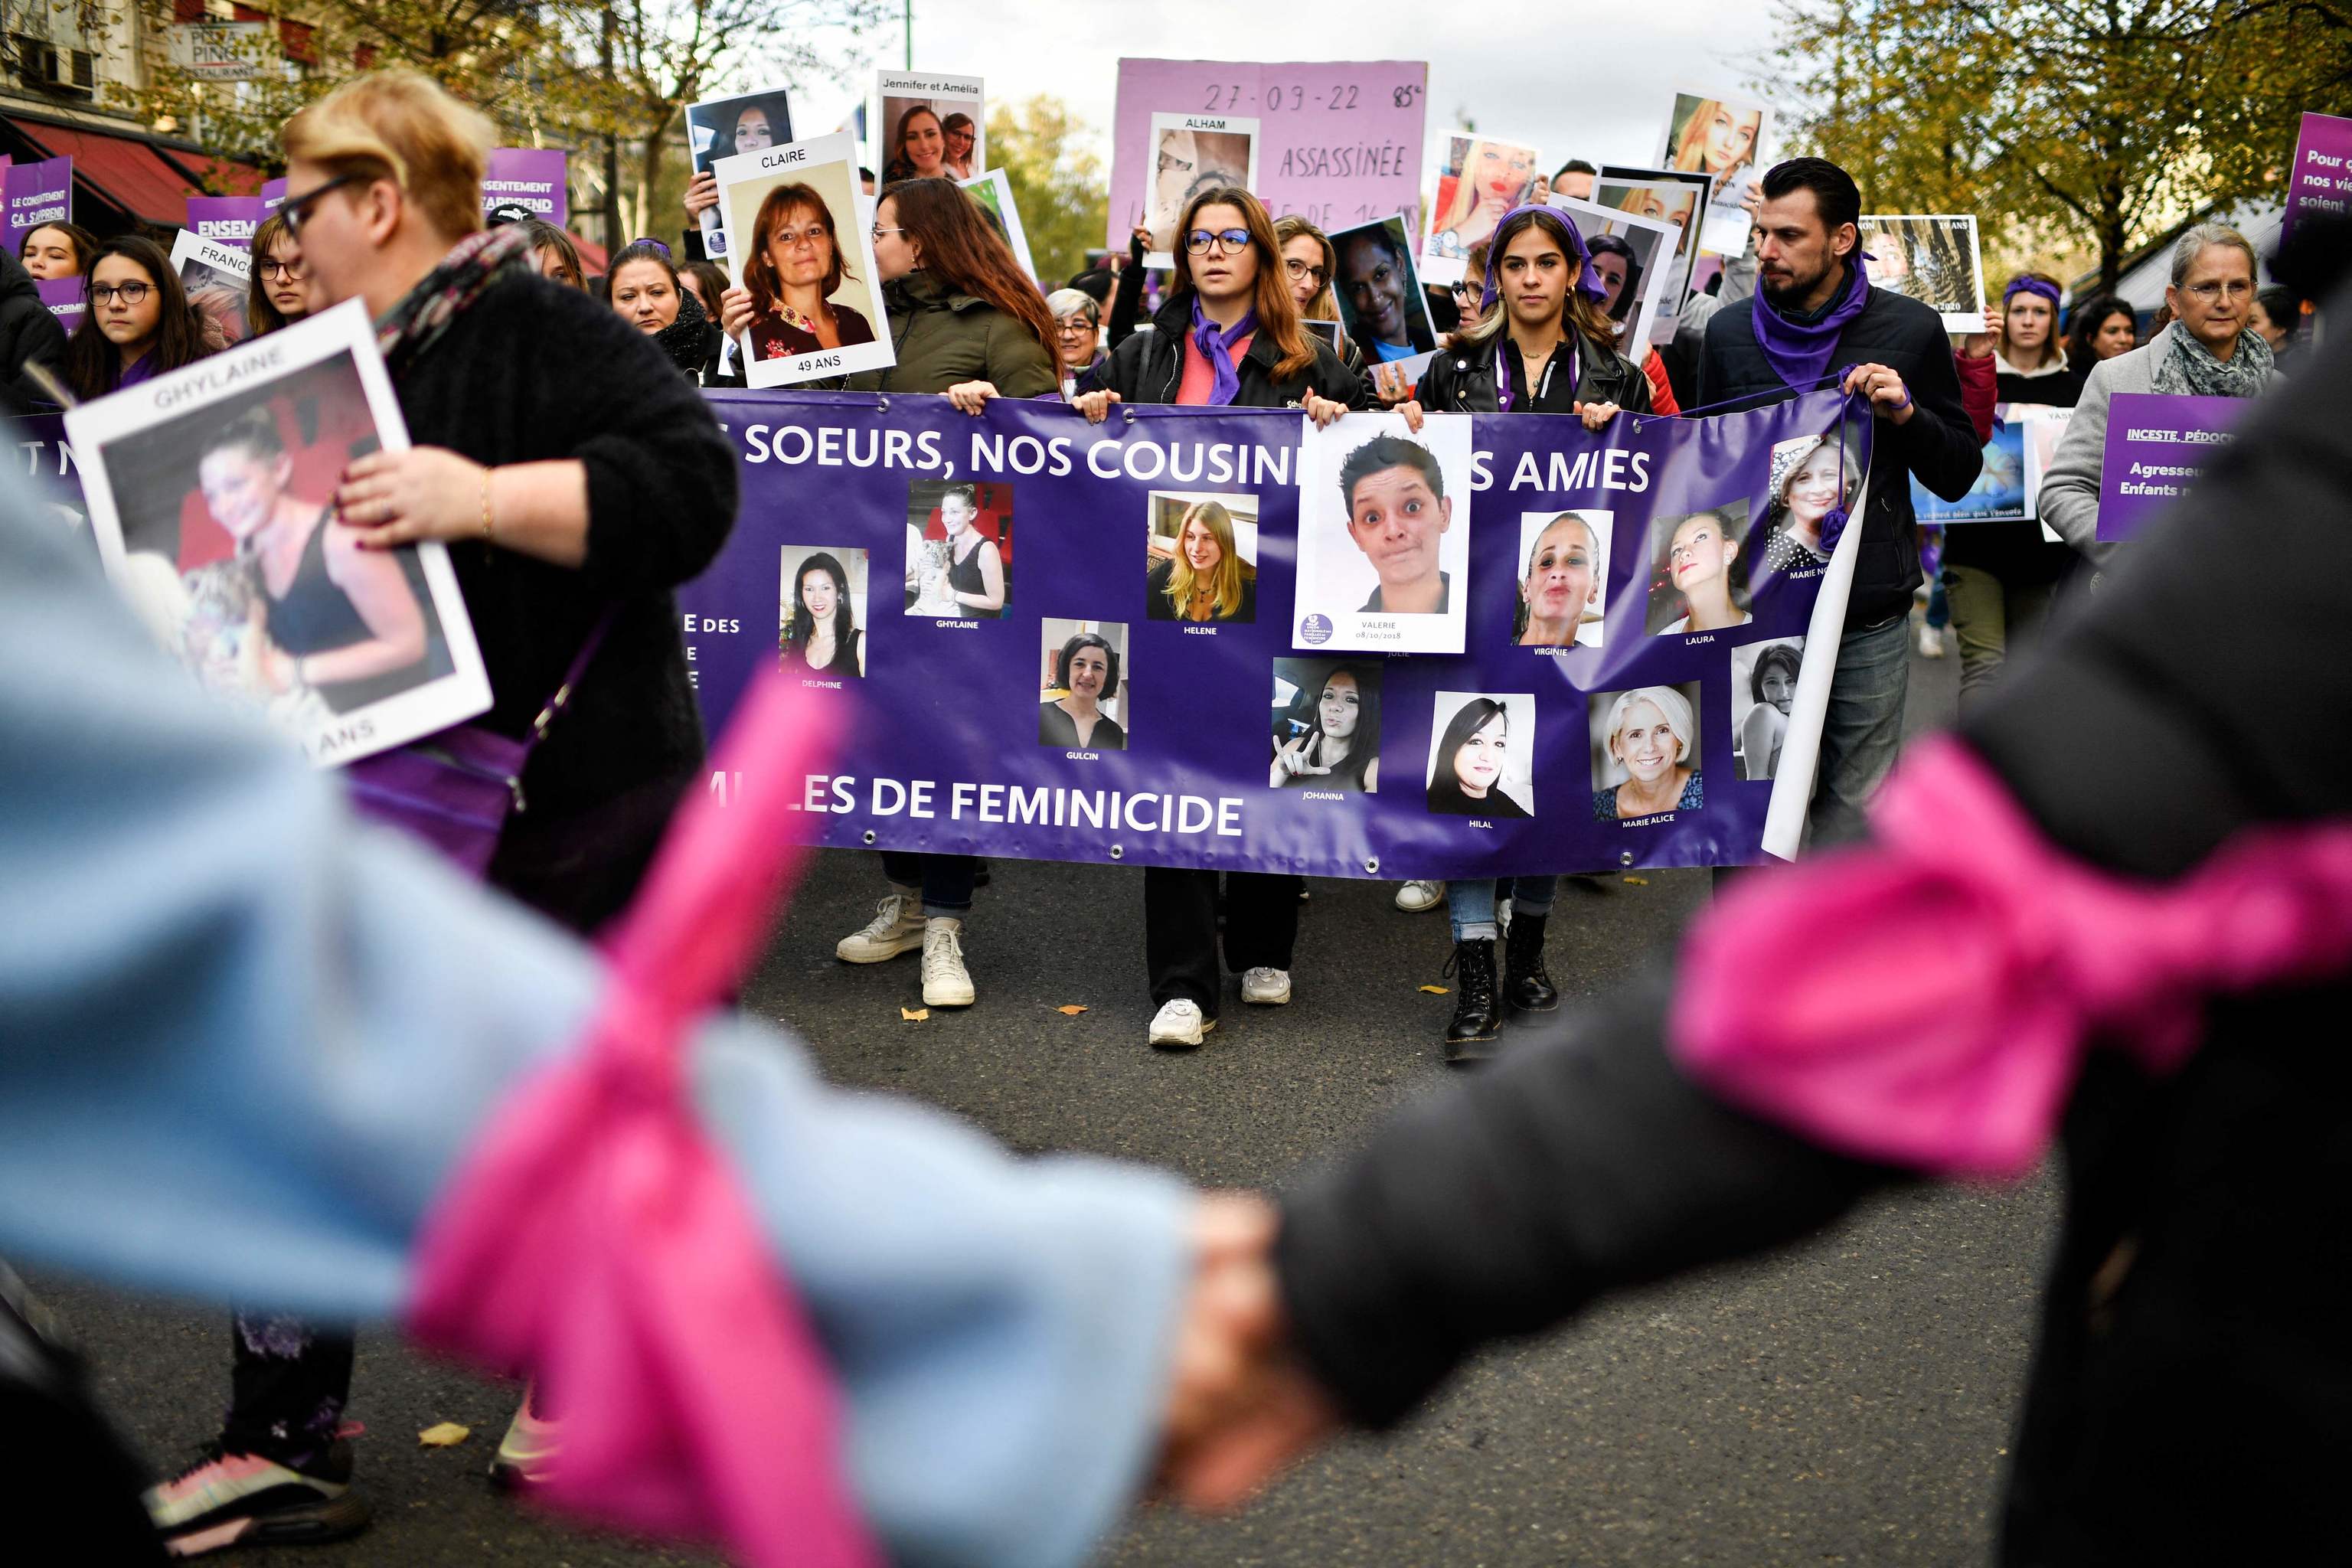 Imágenes de mujeres asesinadas, durante la protesta en París